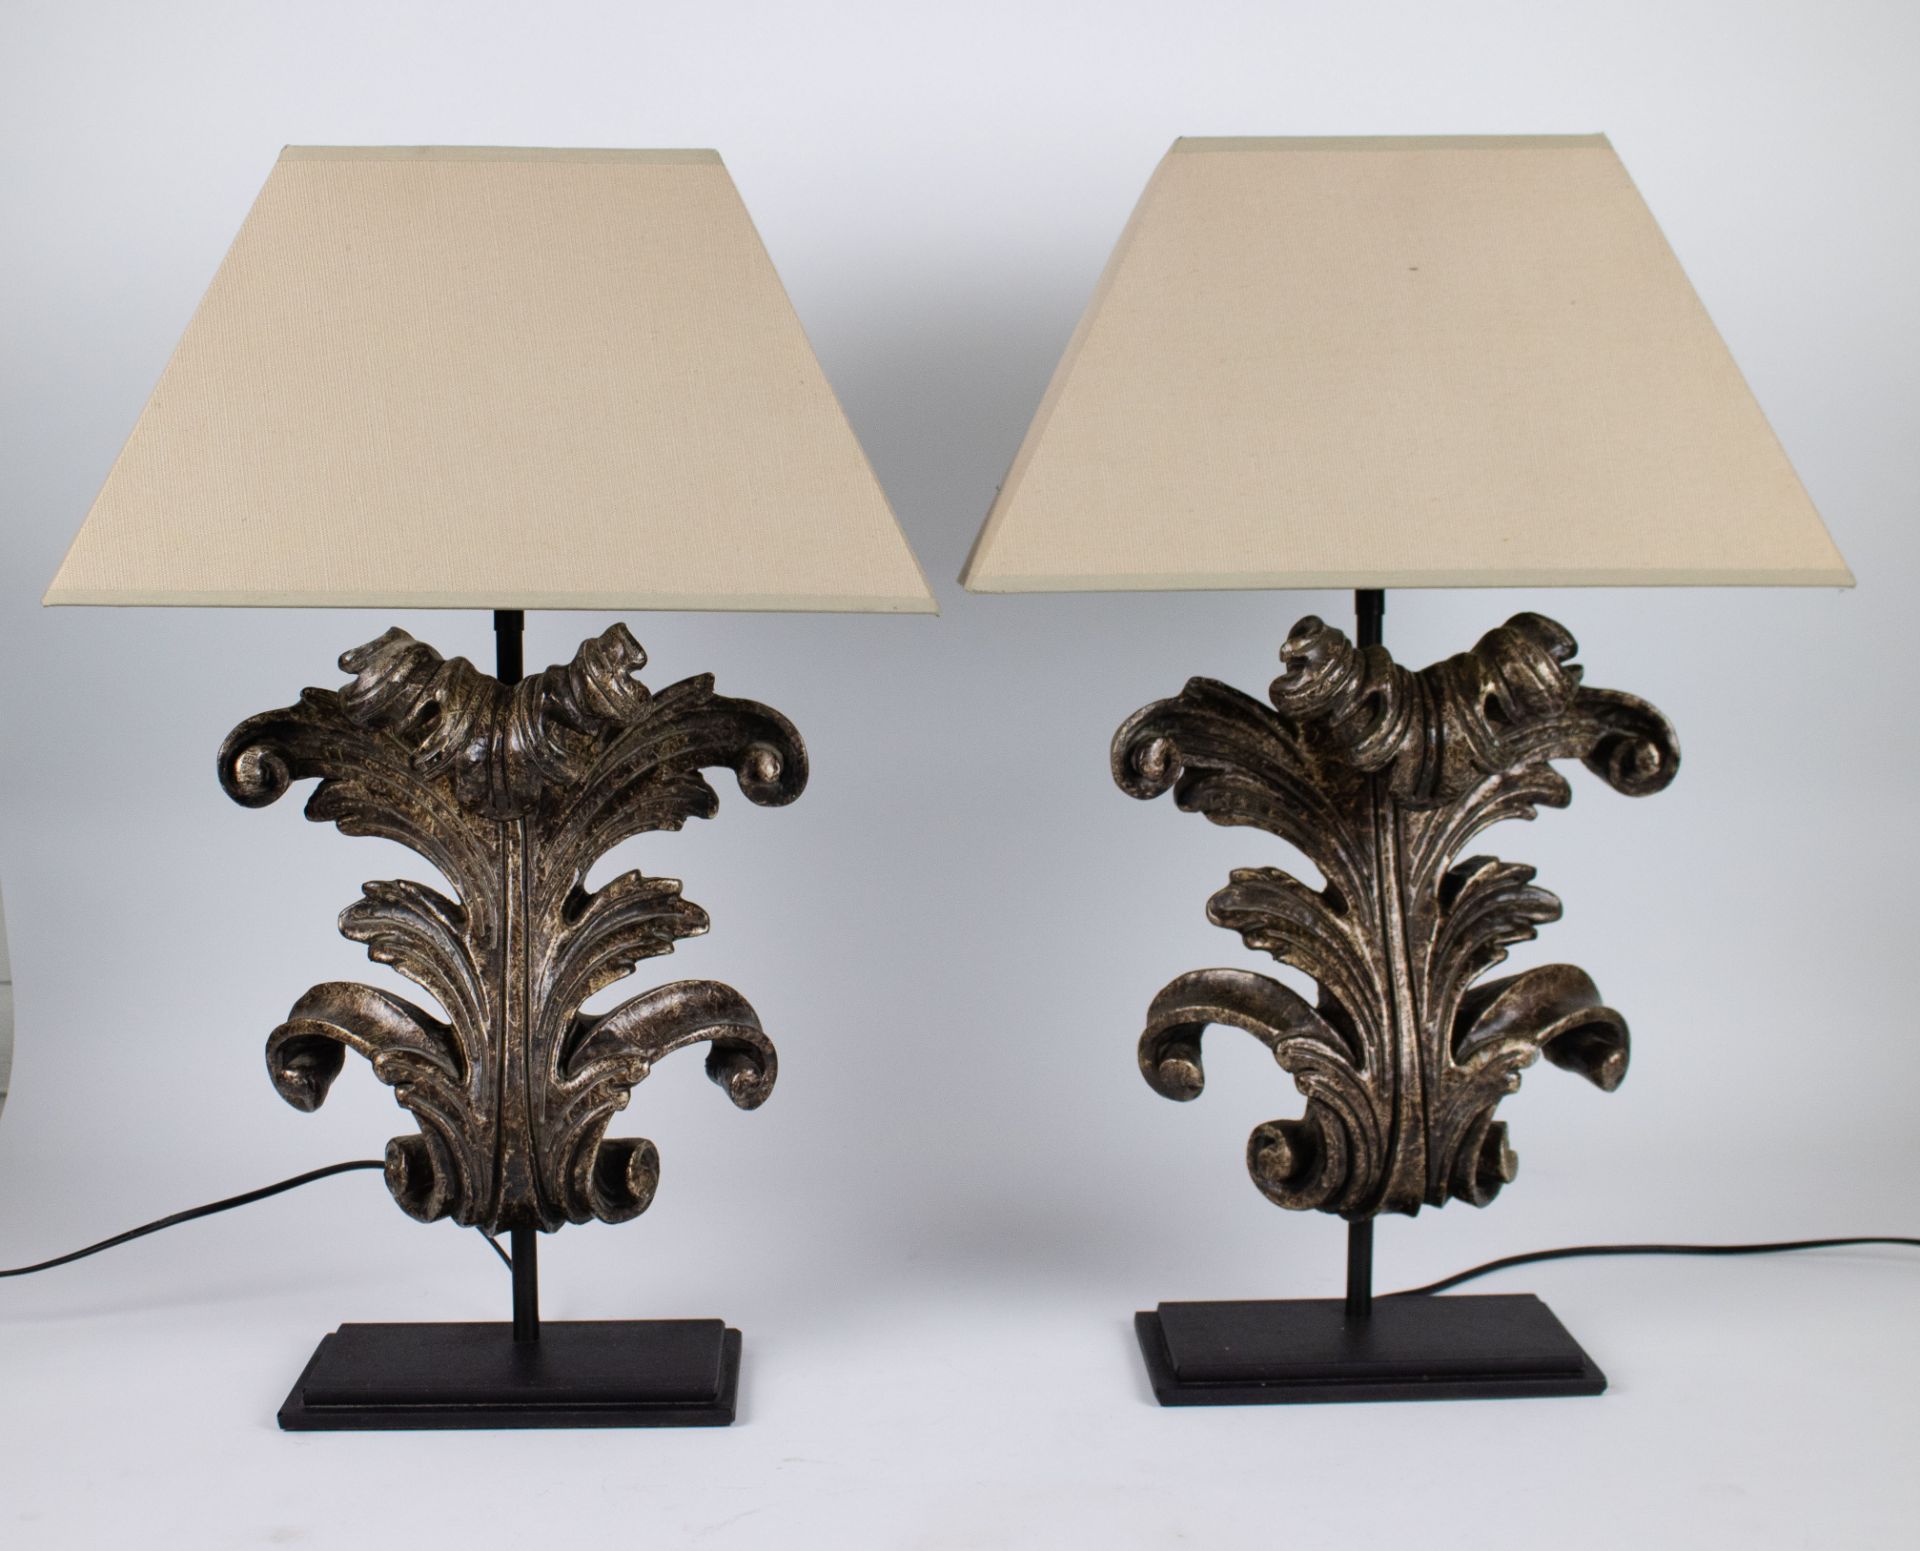 Pair of decorative lampadaires